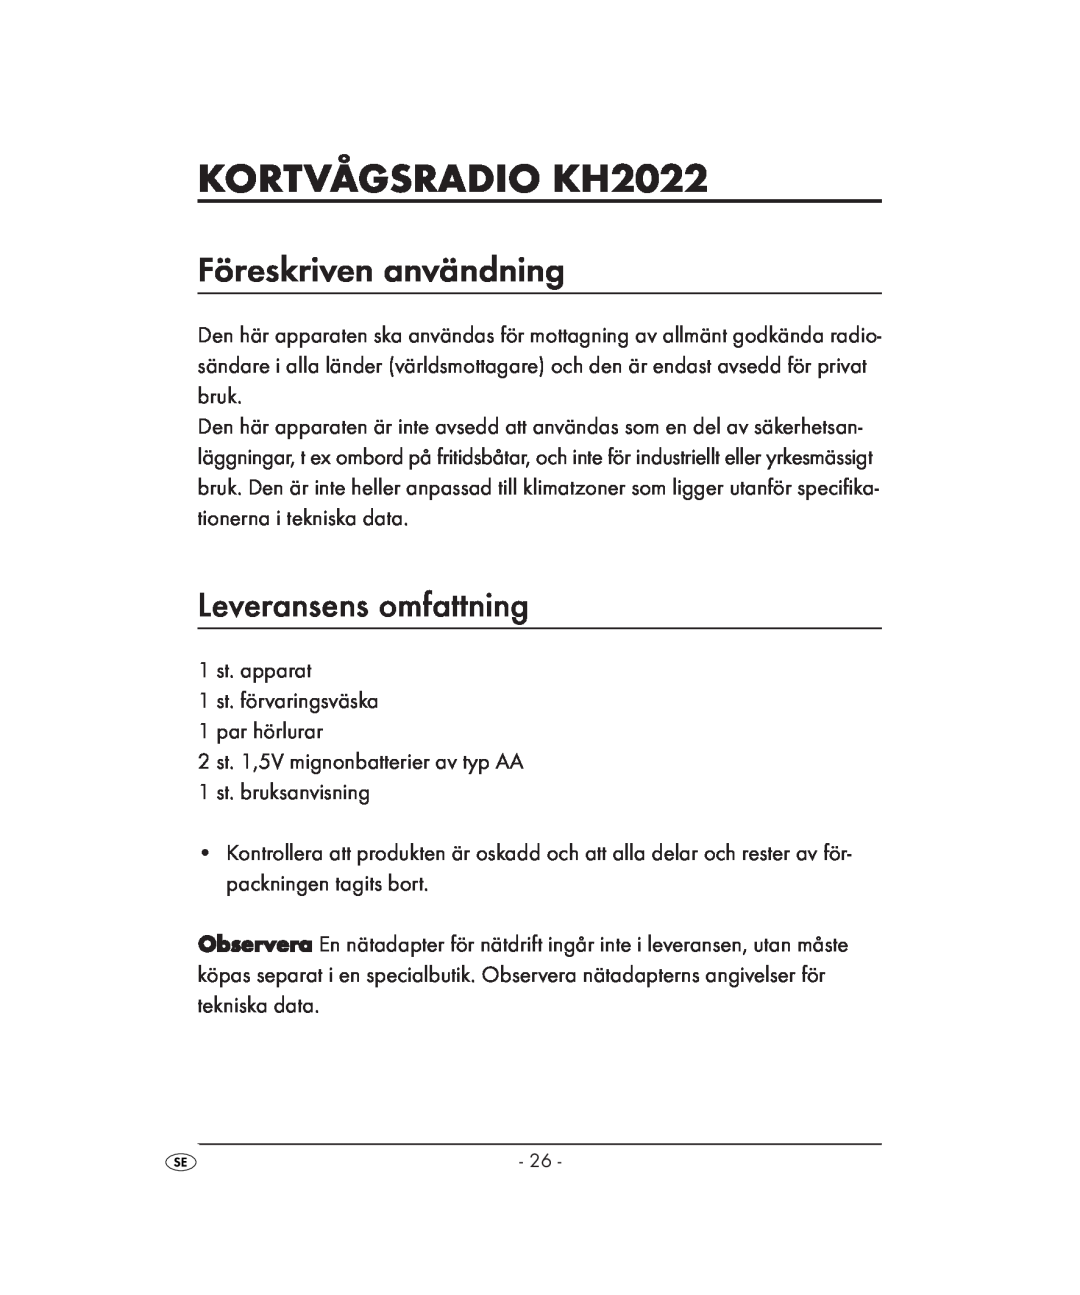 Kompernass KH 2022 manual KORTVÅGSRADIO KH2022, Föreskriven användning, Leveransens omfattning 